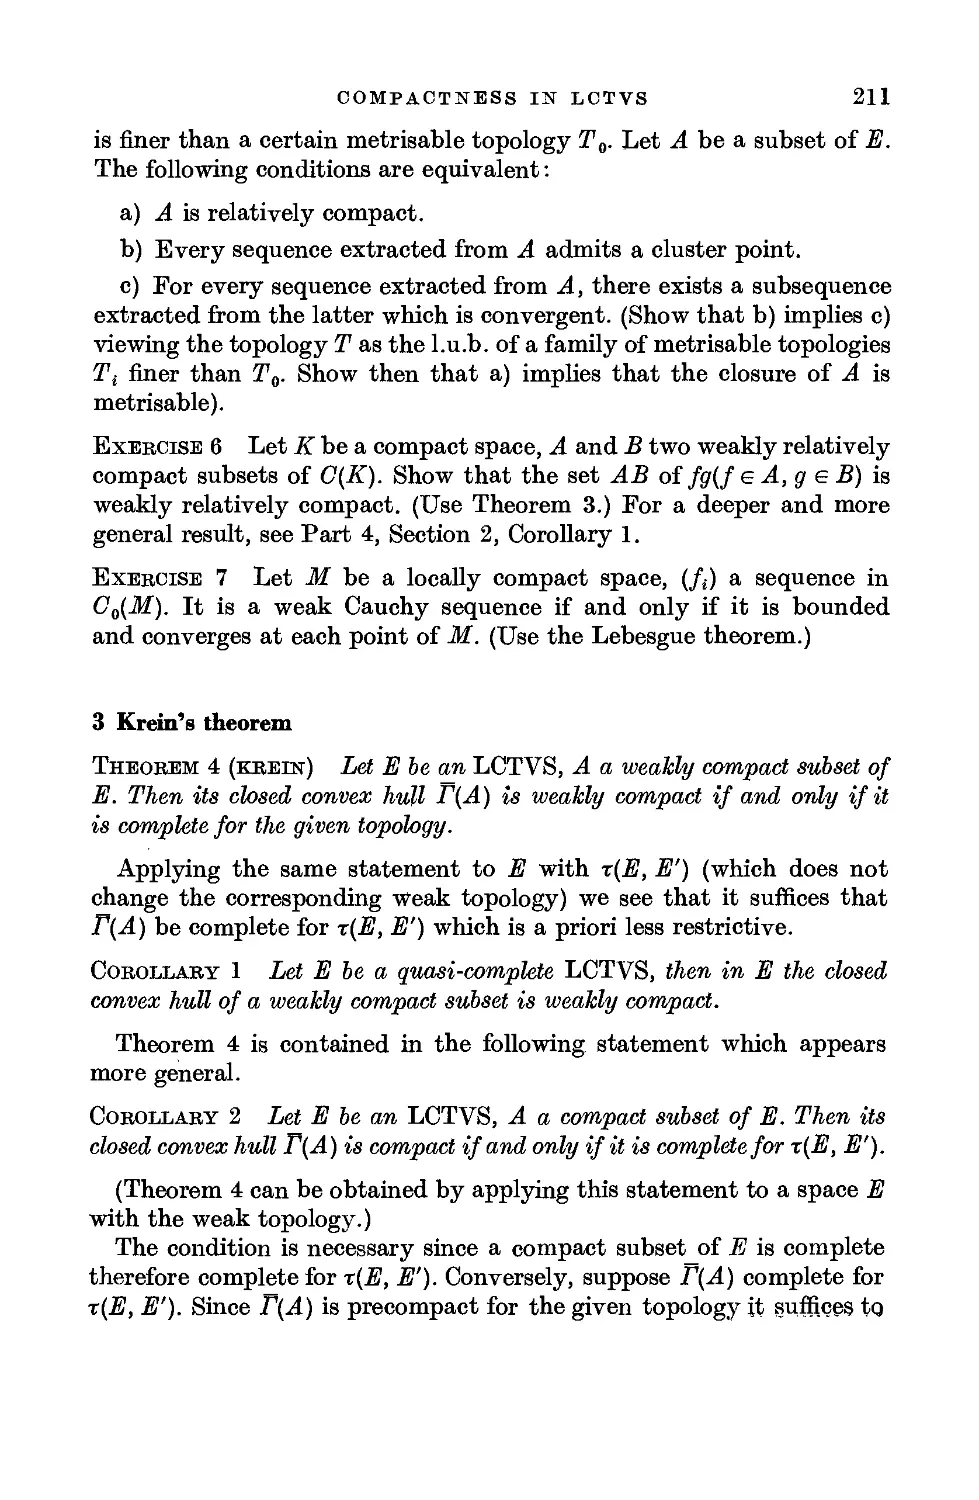 3. Krein's theorem